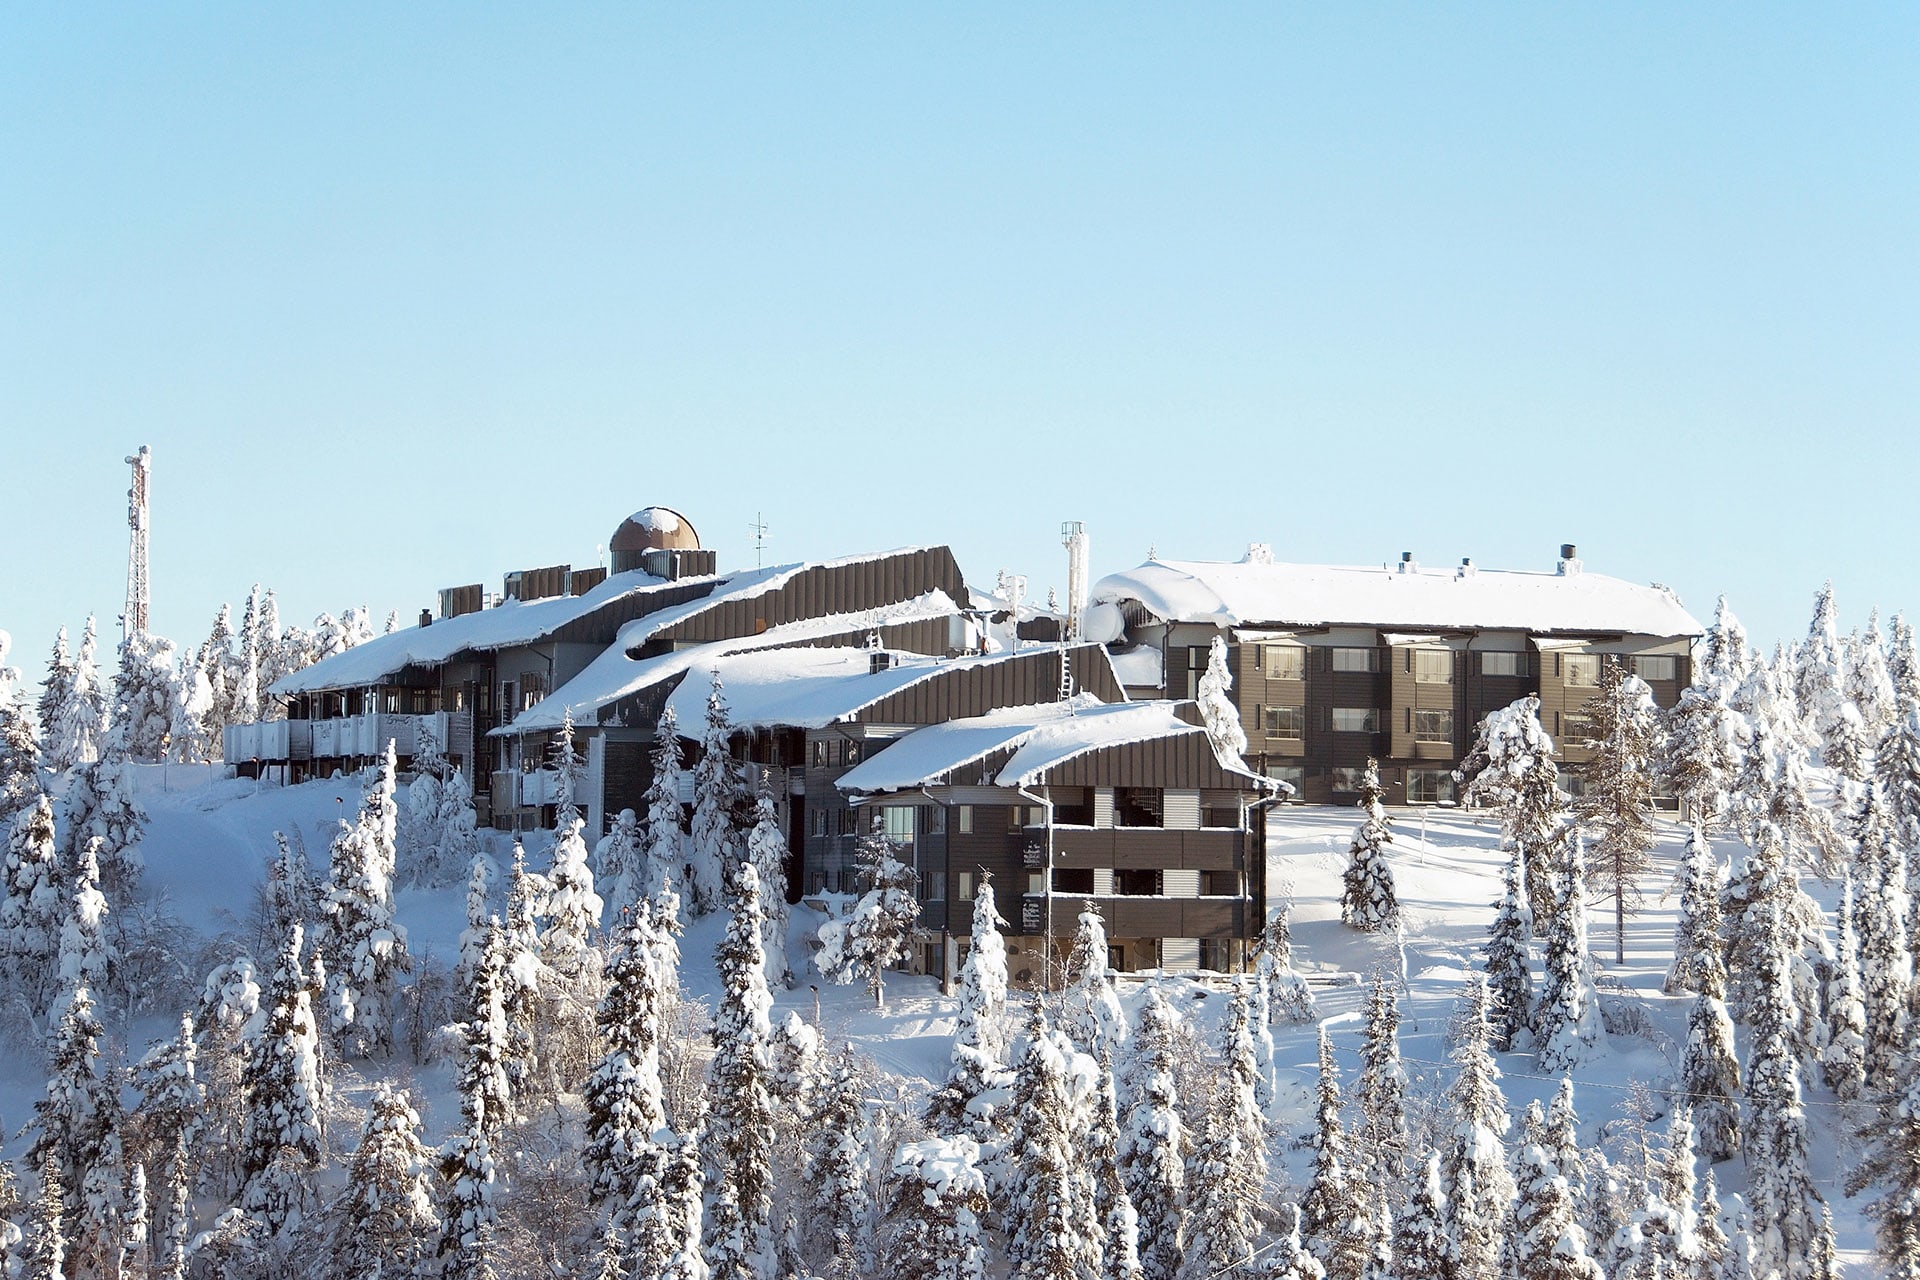 Hotel Pikku-Syöte at winter